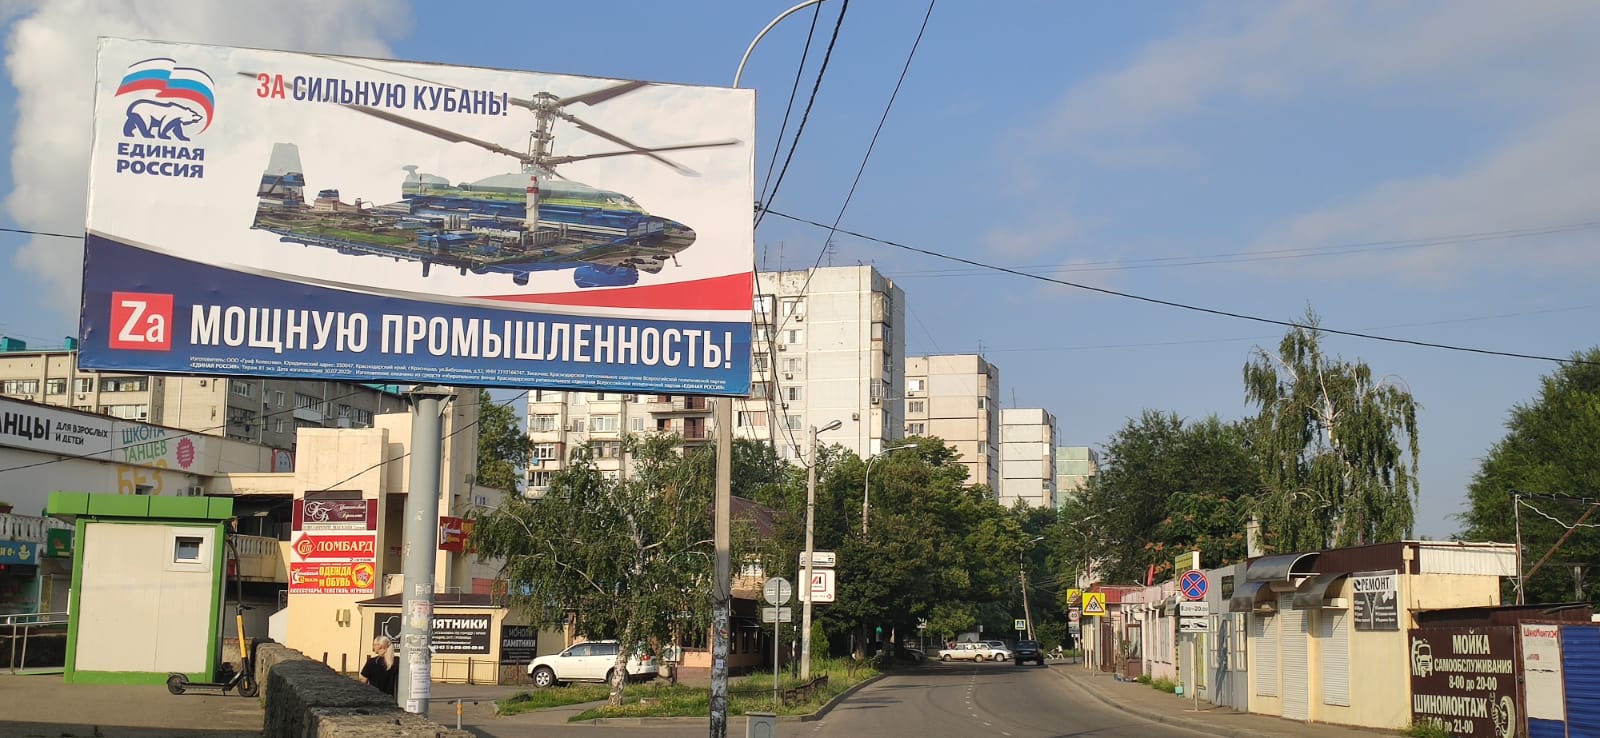 Не верю: сказал бы Станиславский, глядя на выборы в ЗСК на Кубани